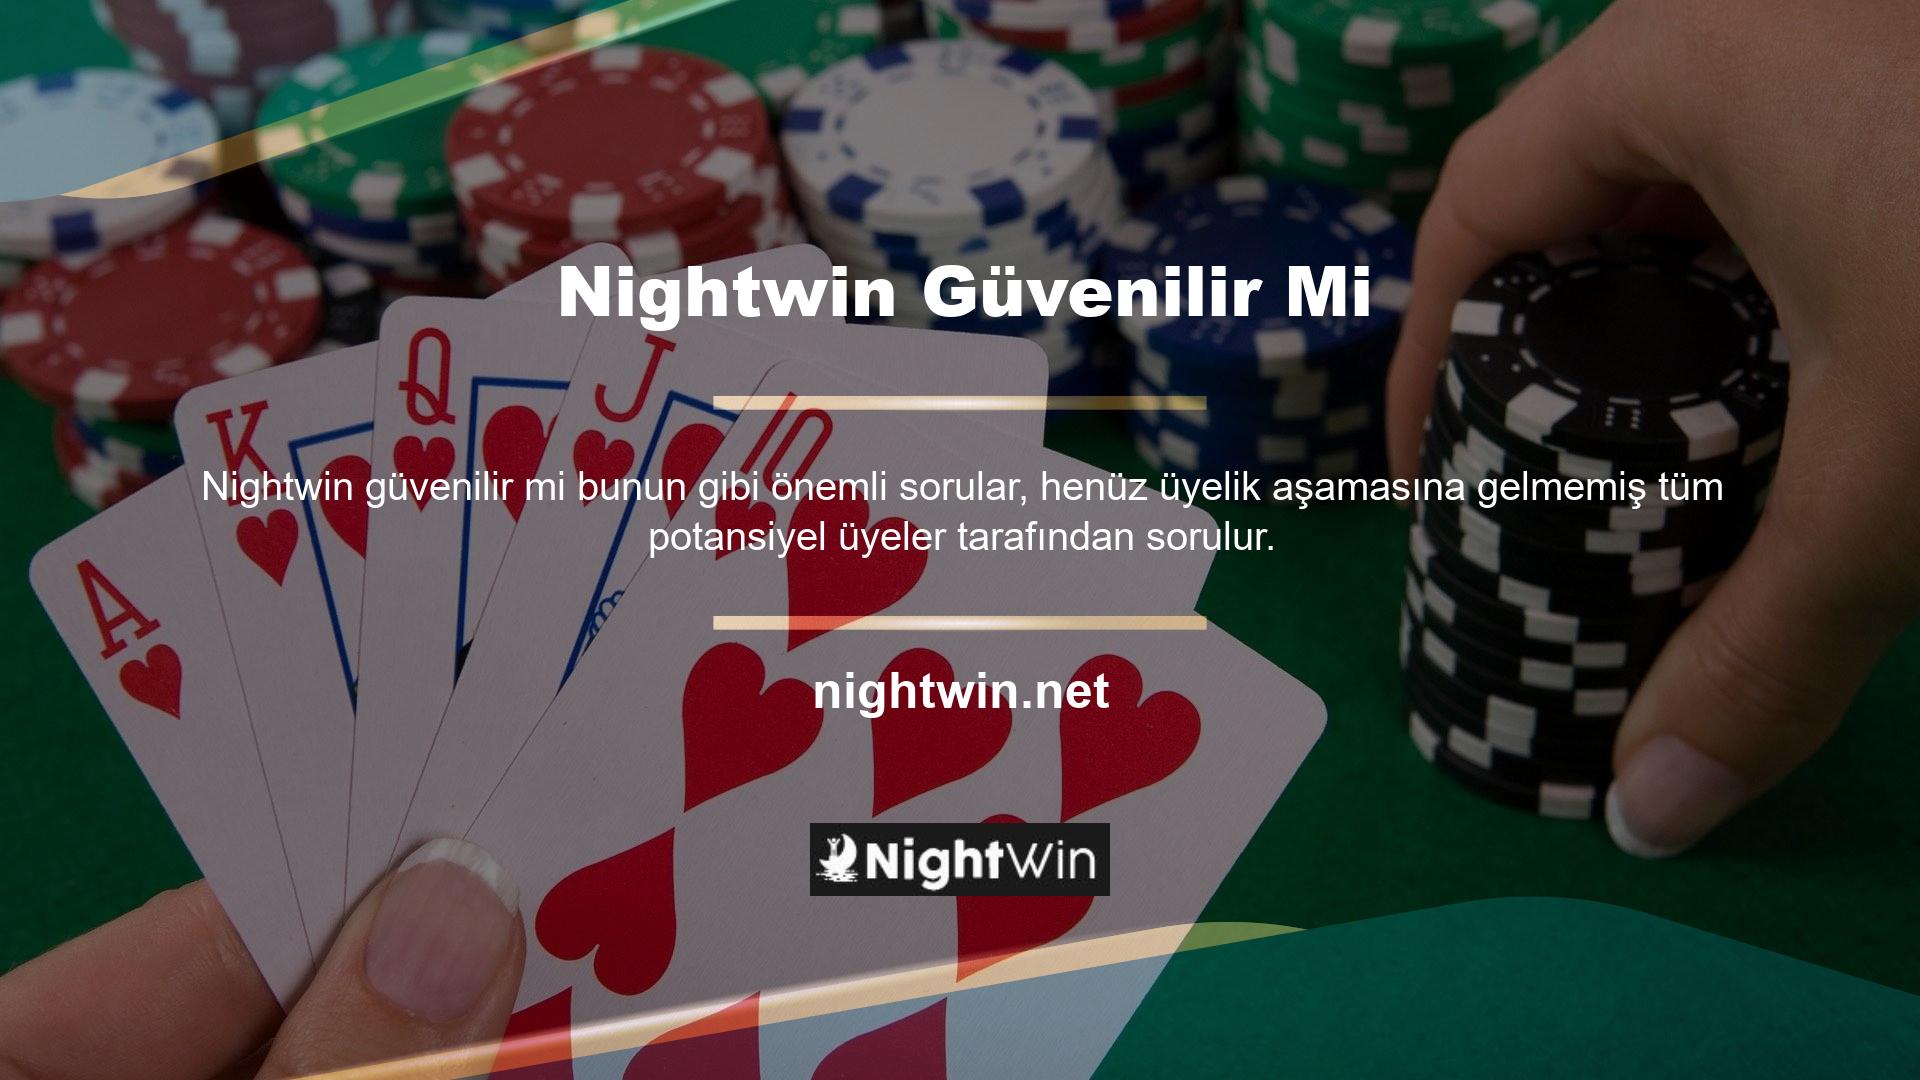 Nightwin, 'güvenilir sanal casino sitesi' terimini içeren tüm listelerde üst sıralarda yer alarak Türkiye sanal casino pazarında adından başarıyla söz ettirmiştir